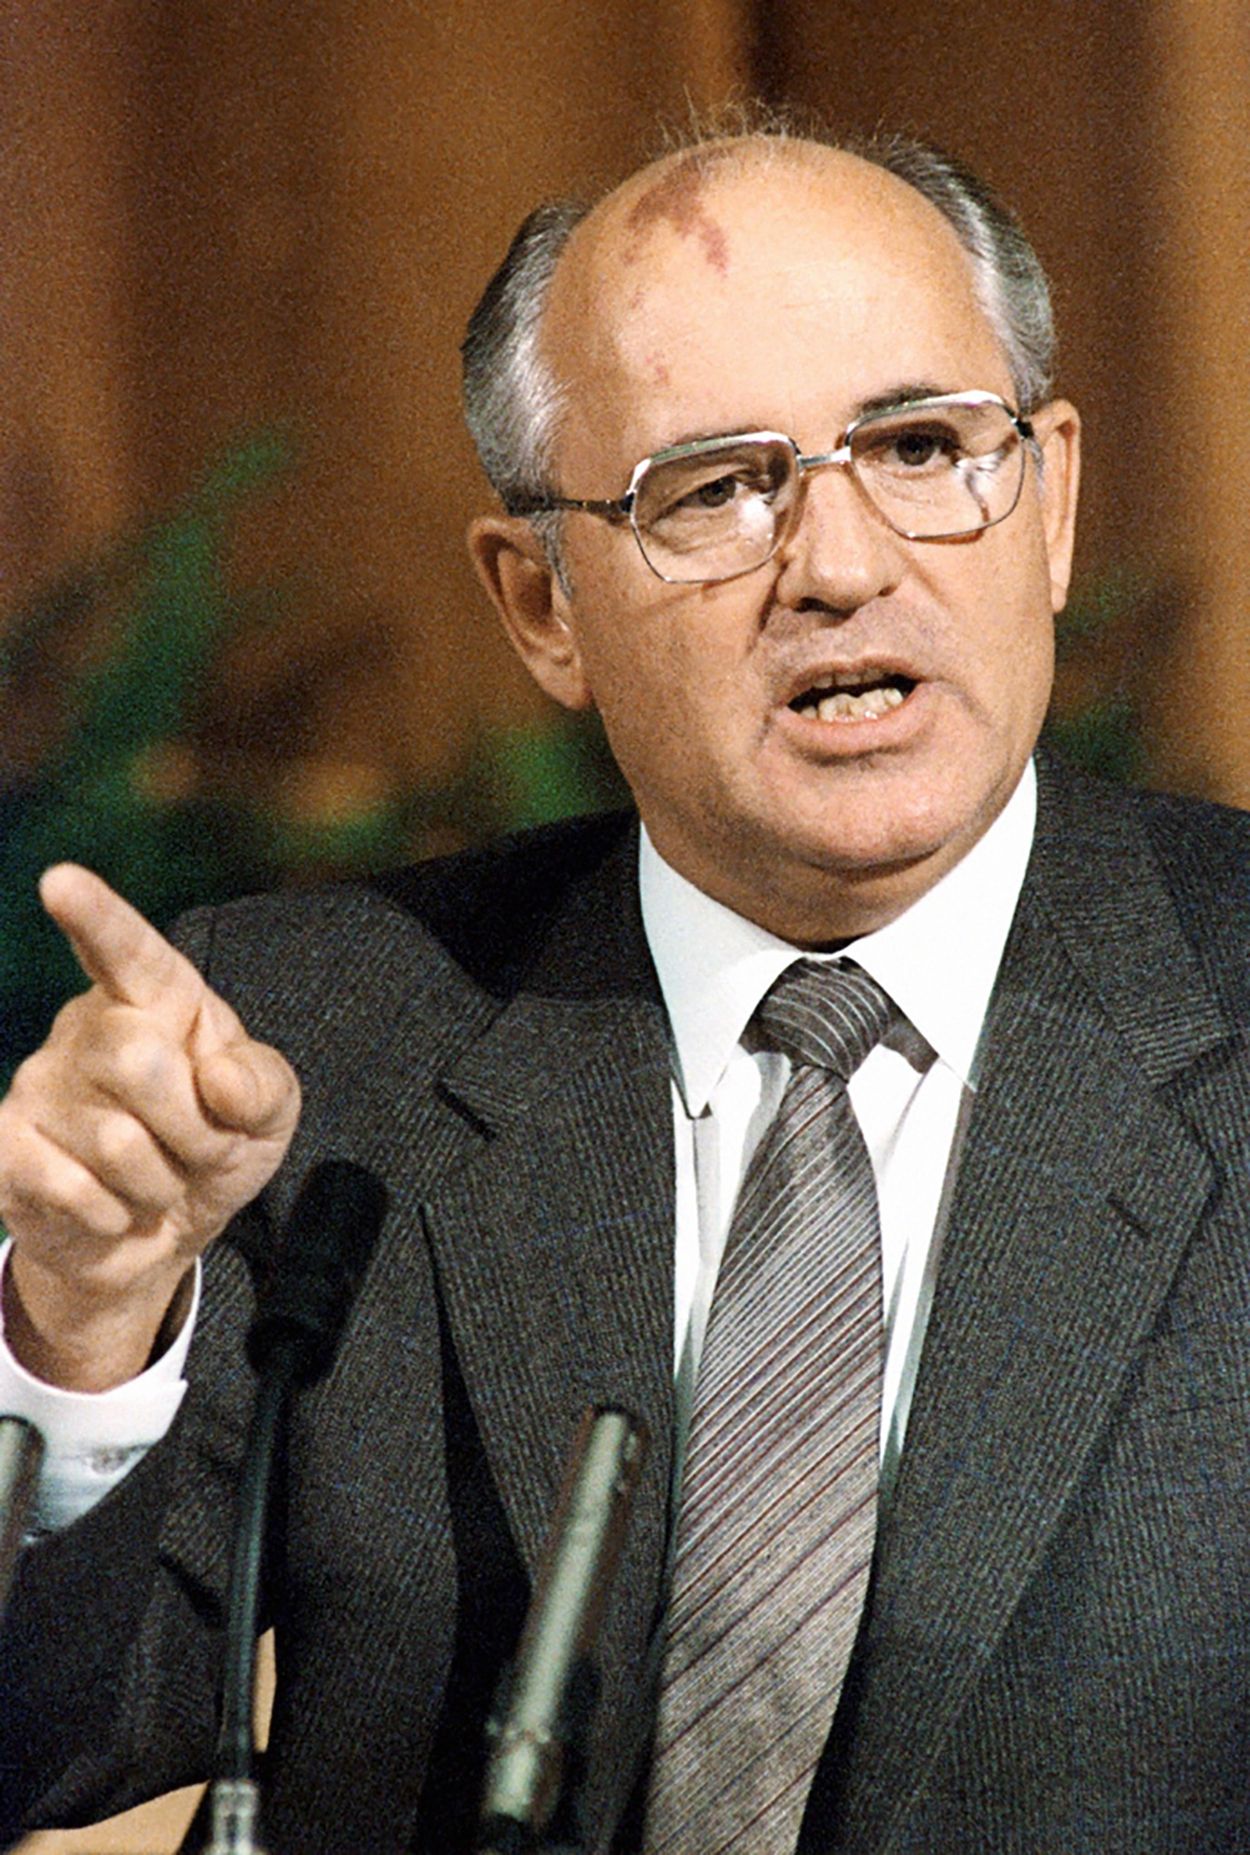 Muere Mijail Gorbachov, el último líder de la URSS y quien puso fin a la Guerra Fría RIAN archive 359290 Mikhail Gorbachev